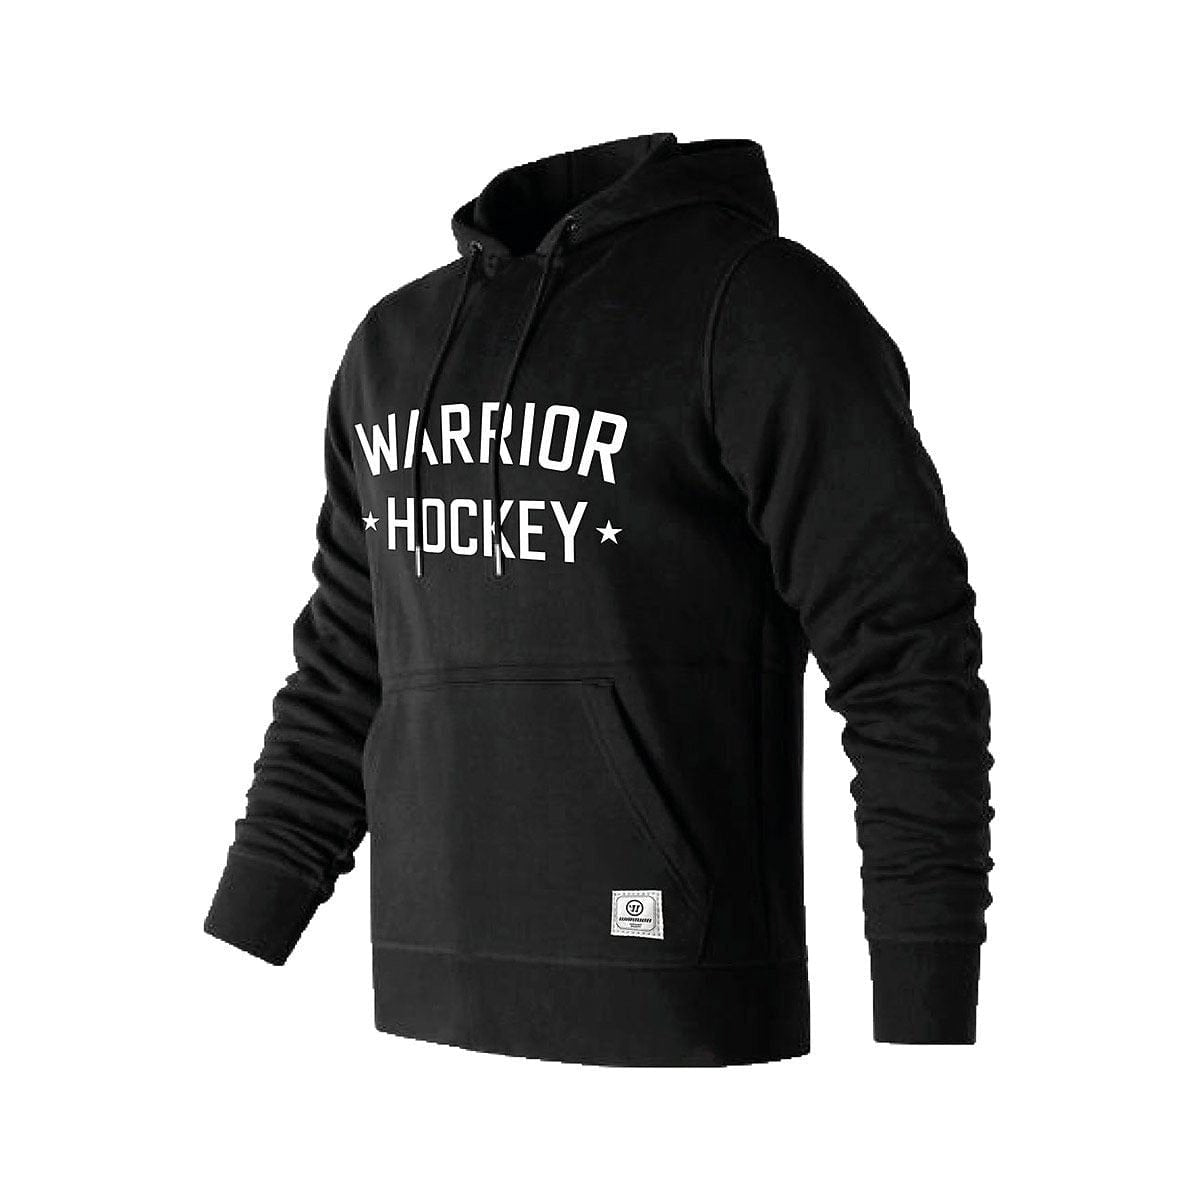 Warrior Hockey Pullover Hoody